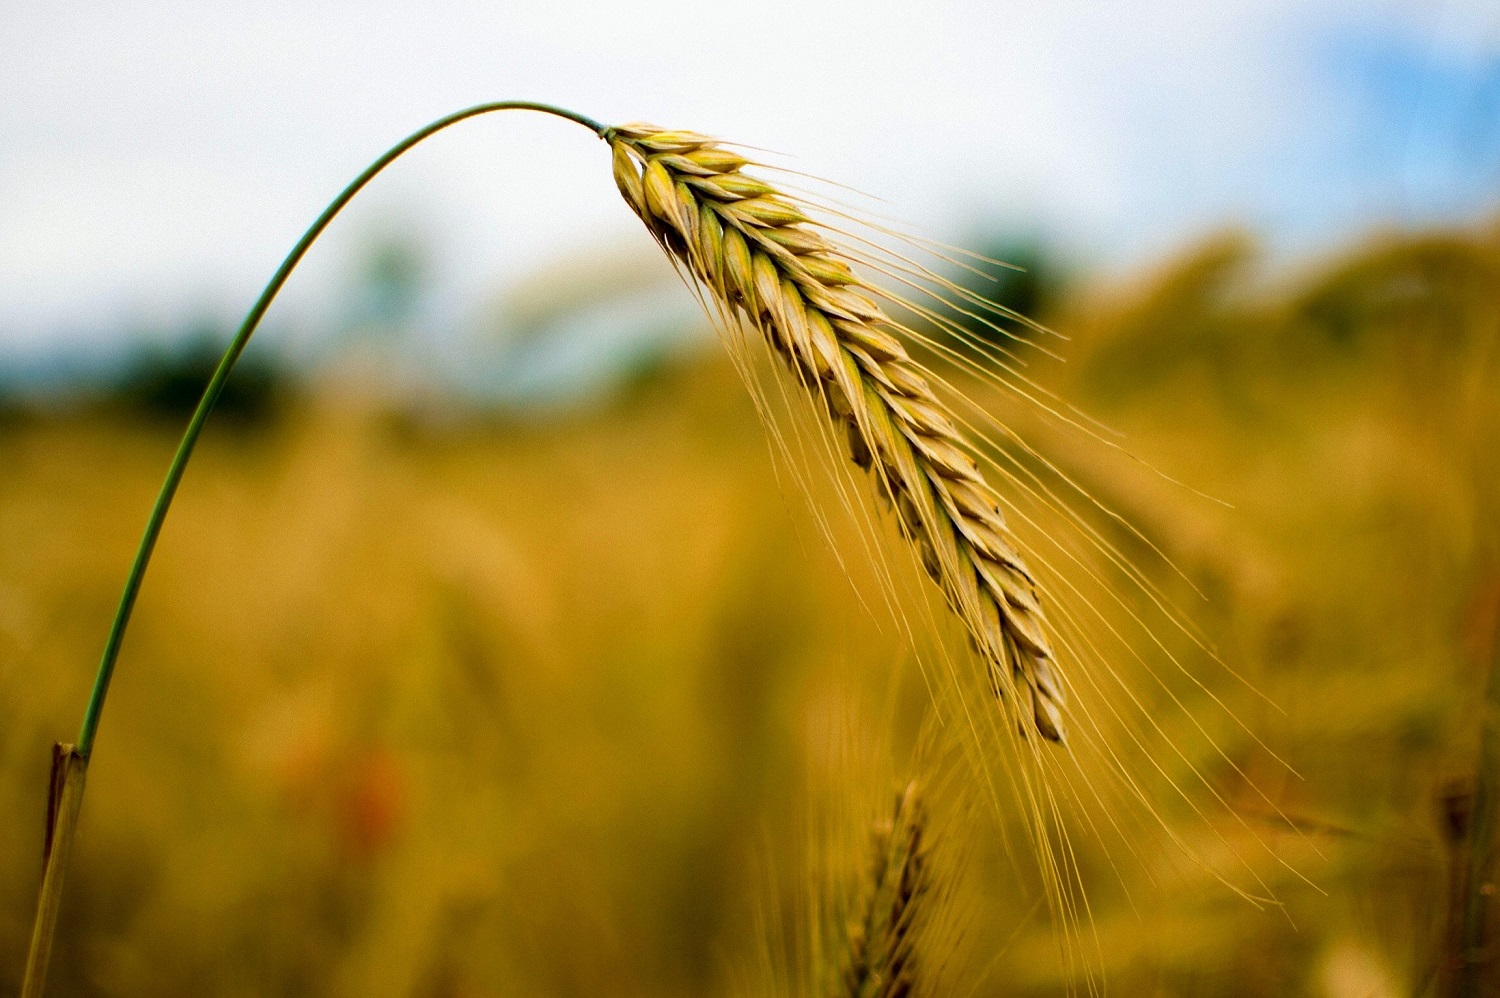 Ūkininkai atmeta prognozes dėl didesnio grūdų derliaus: nenorim gąsdinti, bet klimato išdaigos padarė savo